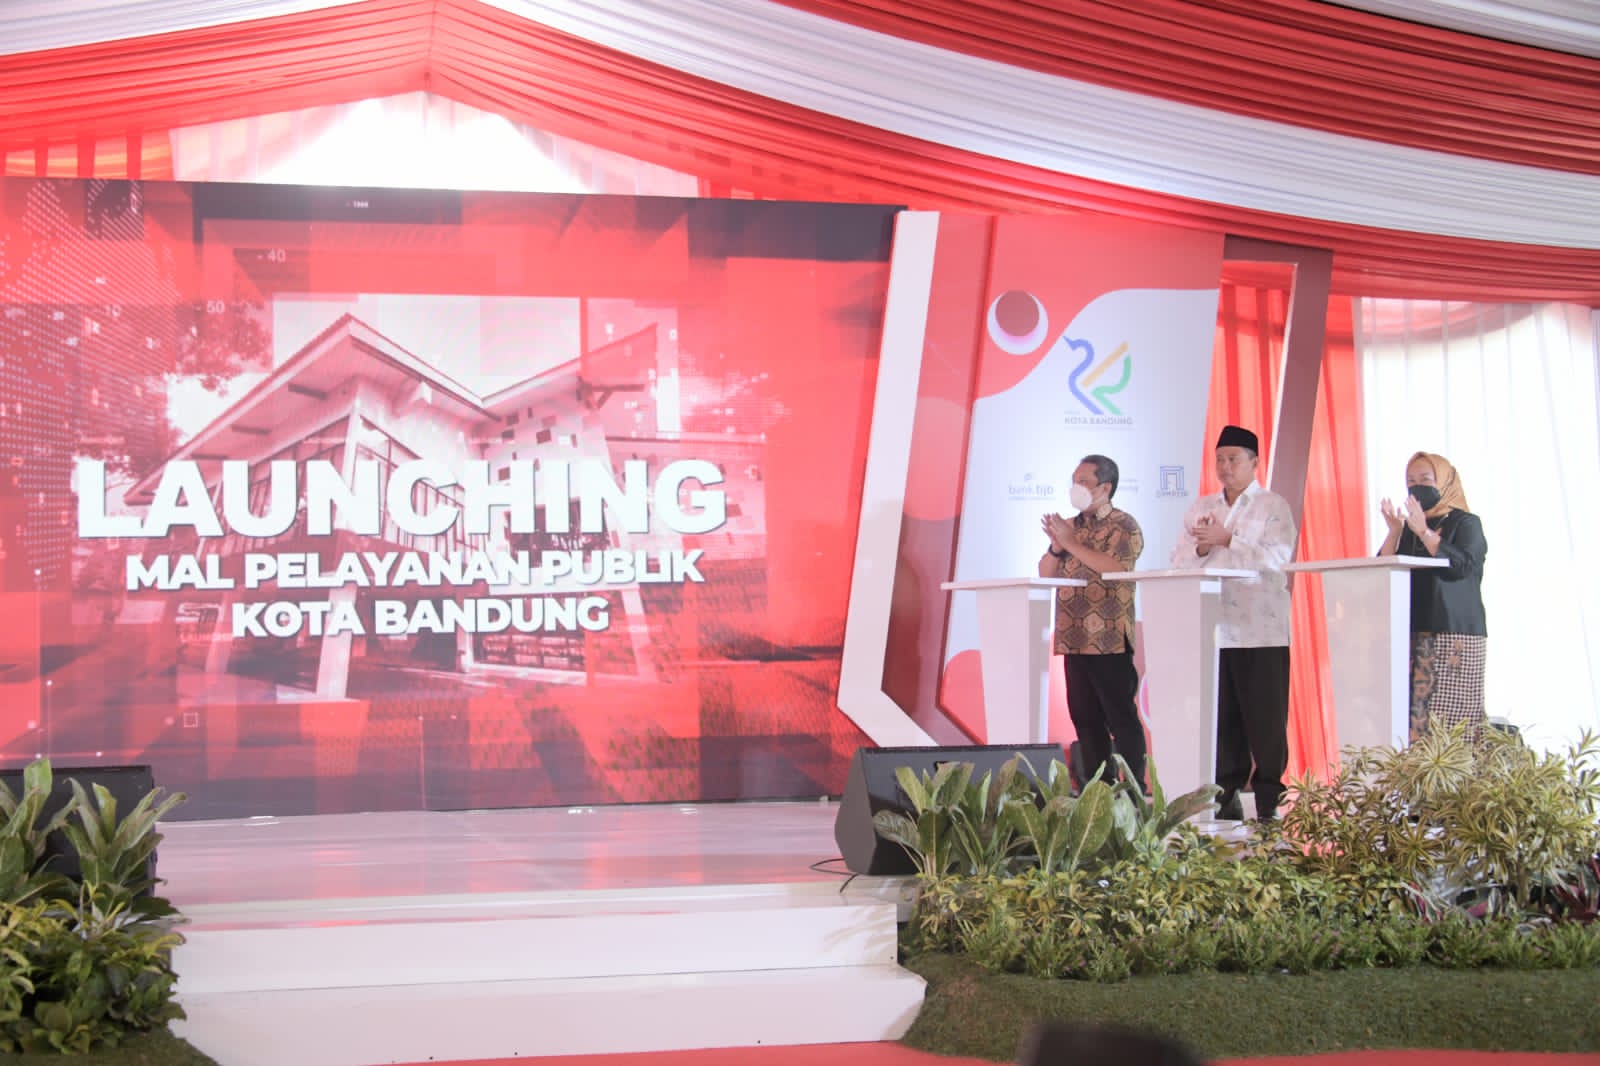 Uu Ruzhanul Dorong 27 Daerah di Jawa Barat Hadirkan Mal Pelayanan Publik